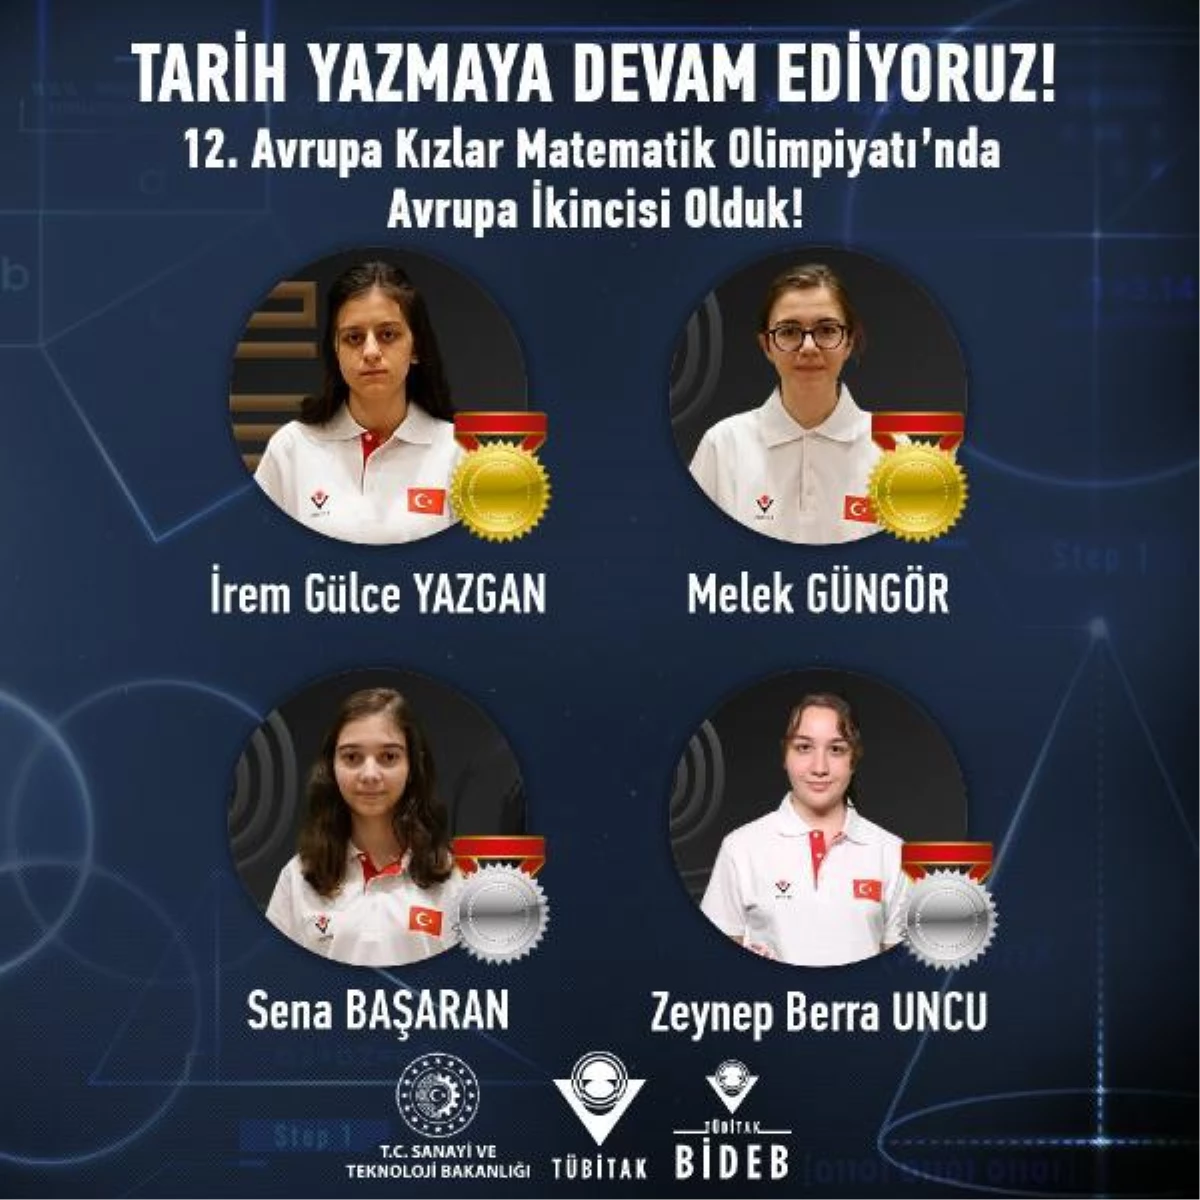 Türk öğrenciler Avrupa Kızlar Matematik Olimpiyatında büyük muvaffakiyet elde etti